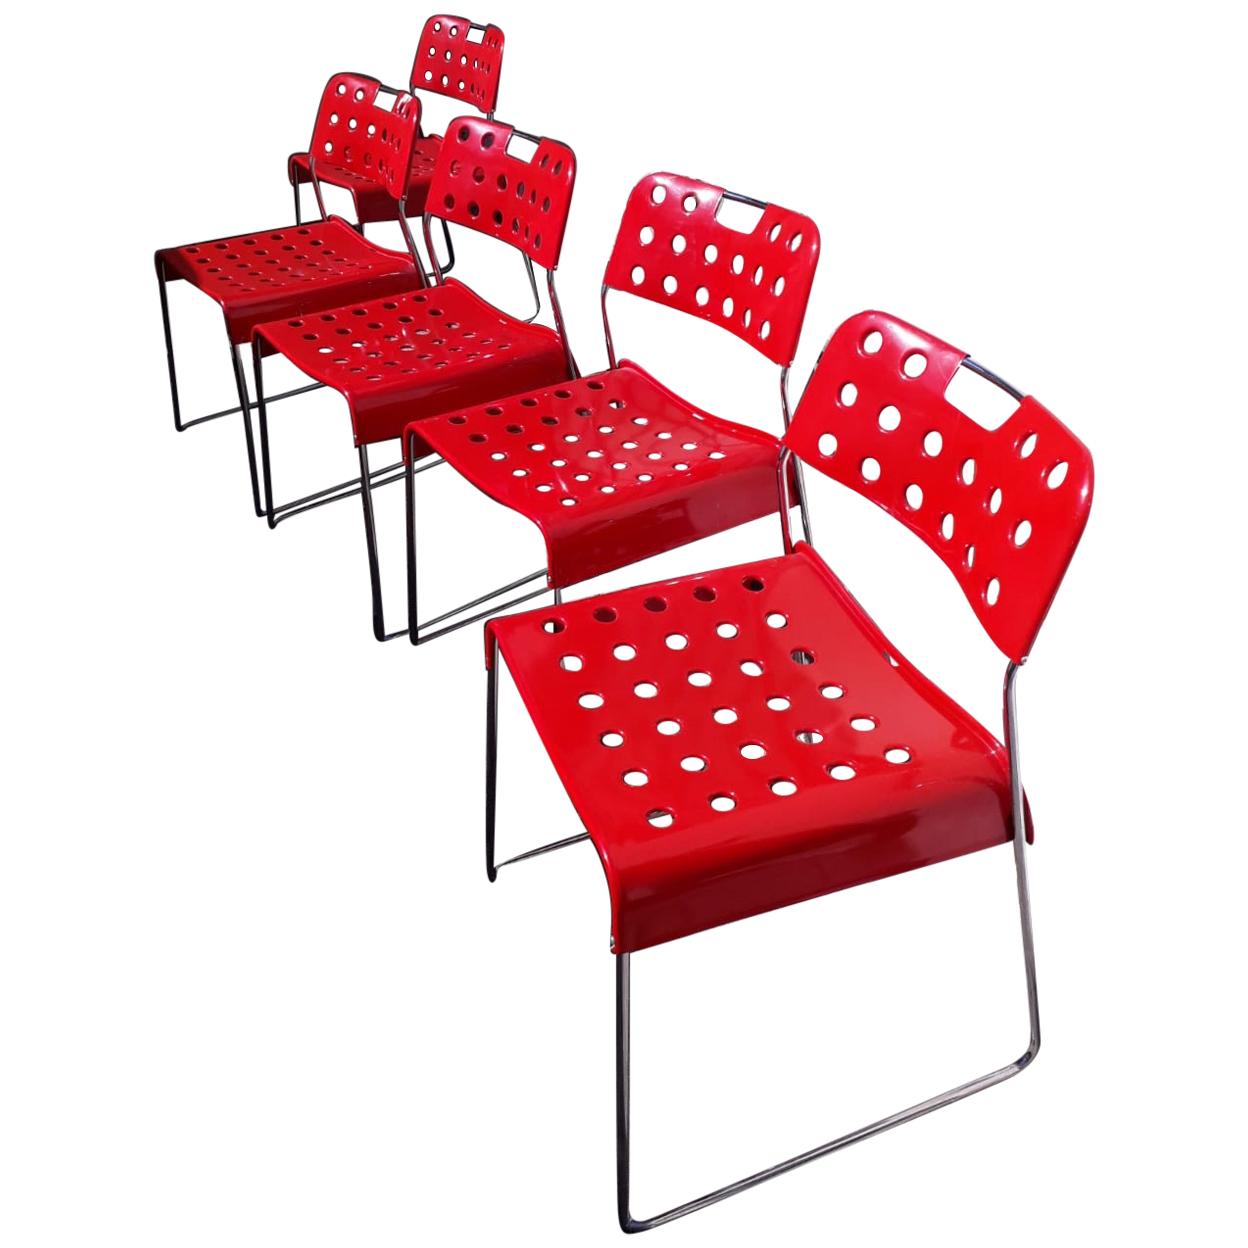 5 Omkstak Red Chairs by Redney Kinsman for Bieffeplast, 1960s